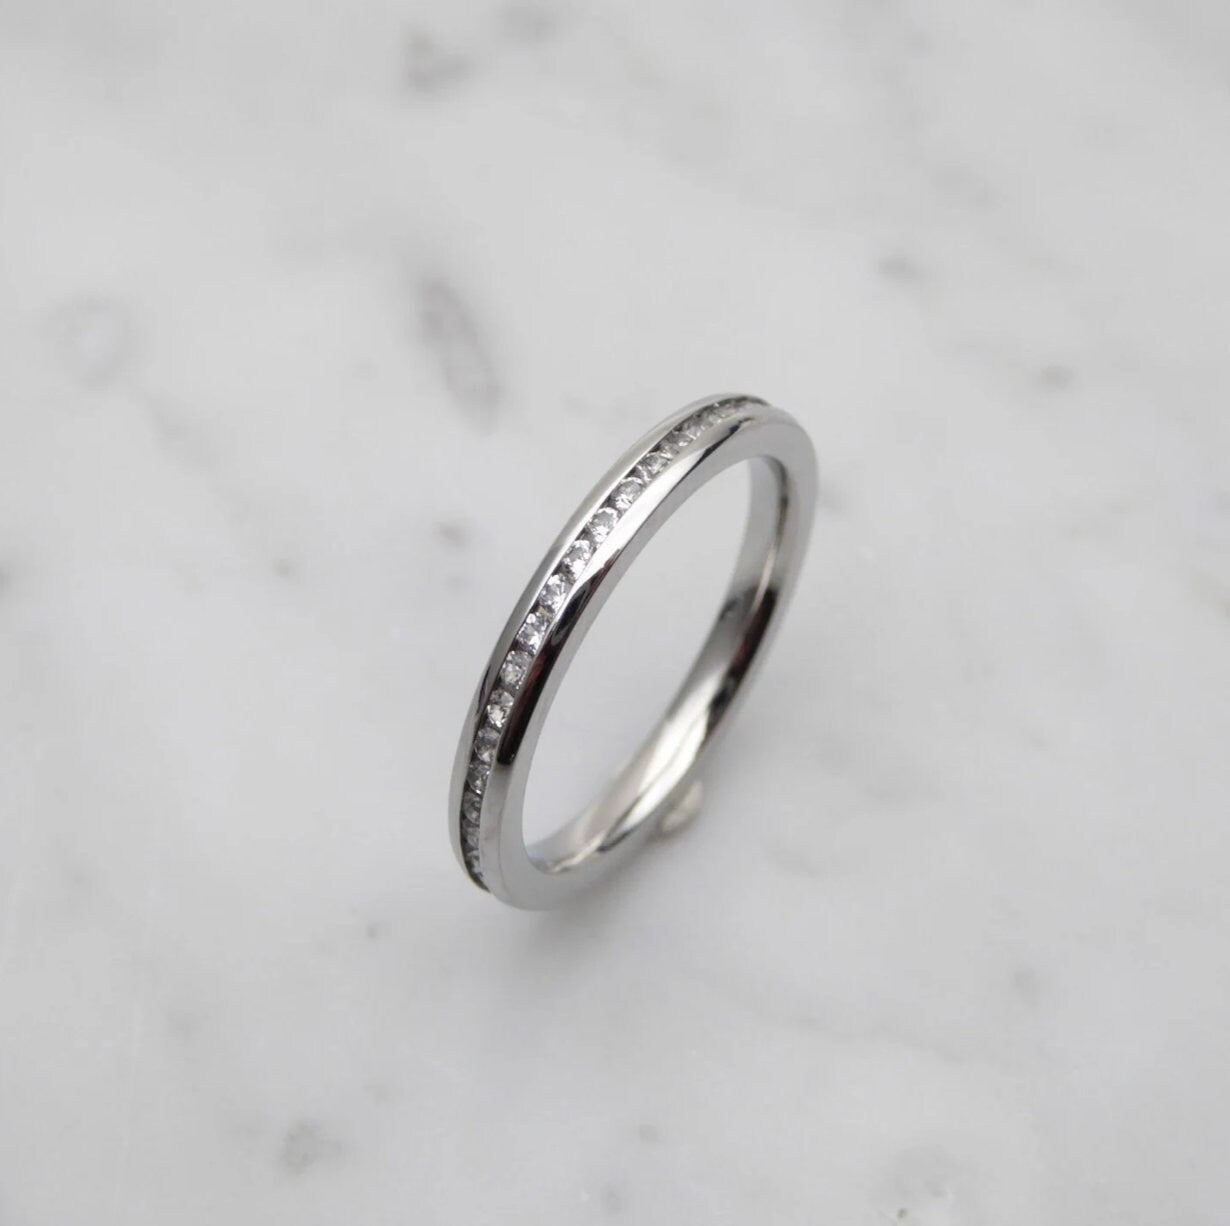 Genuine moissanite Bridal Ring Set in White Gold or Titanium  - engagement ring - handmade ring